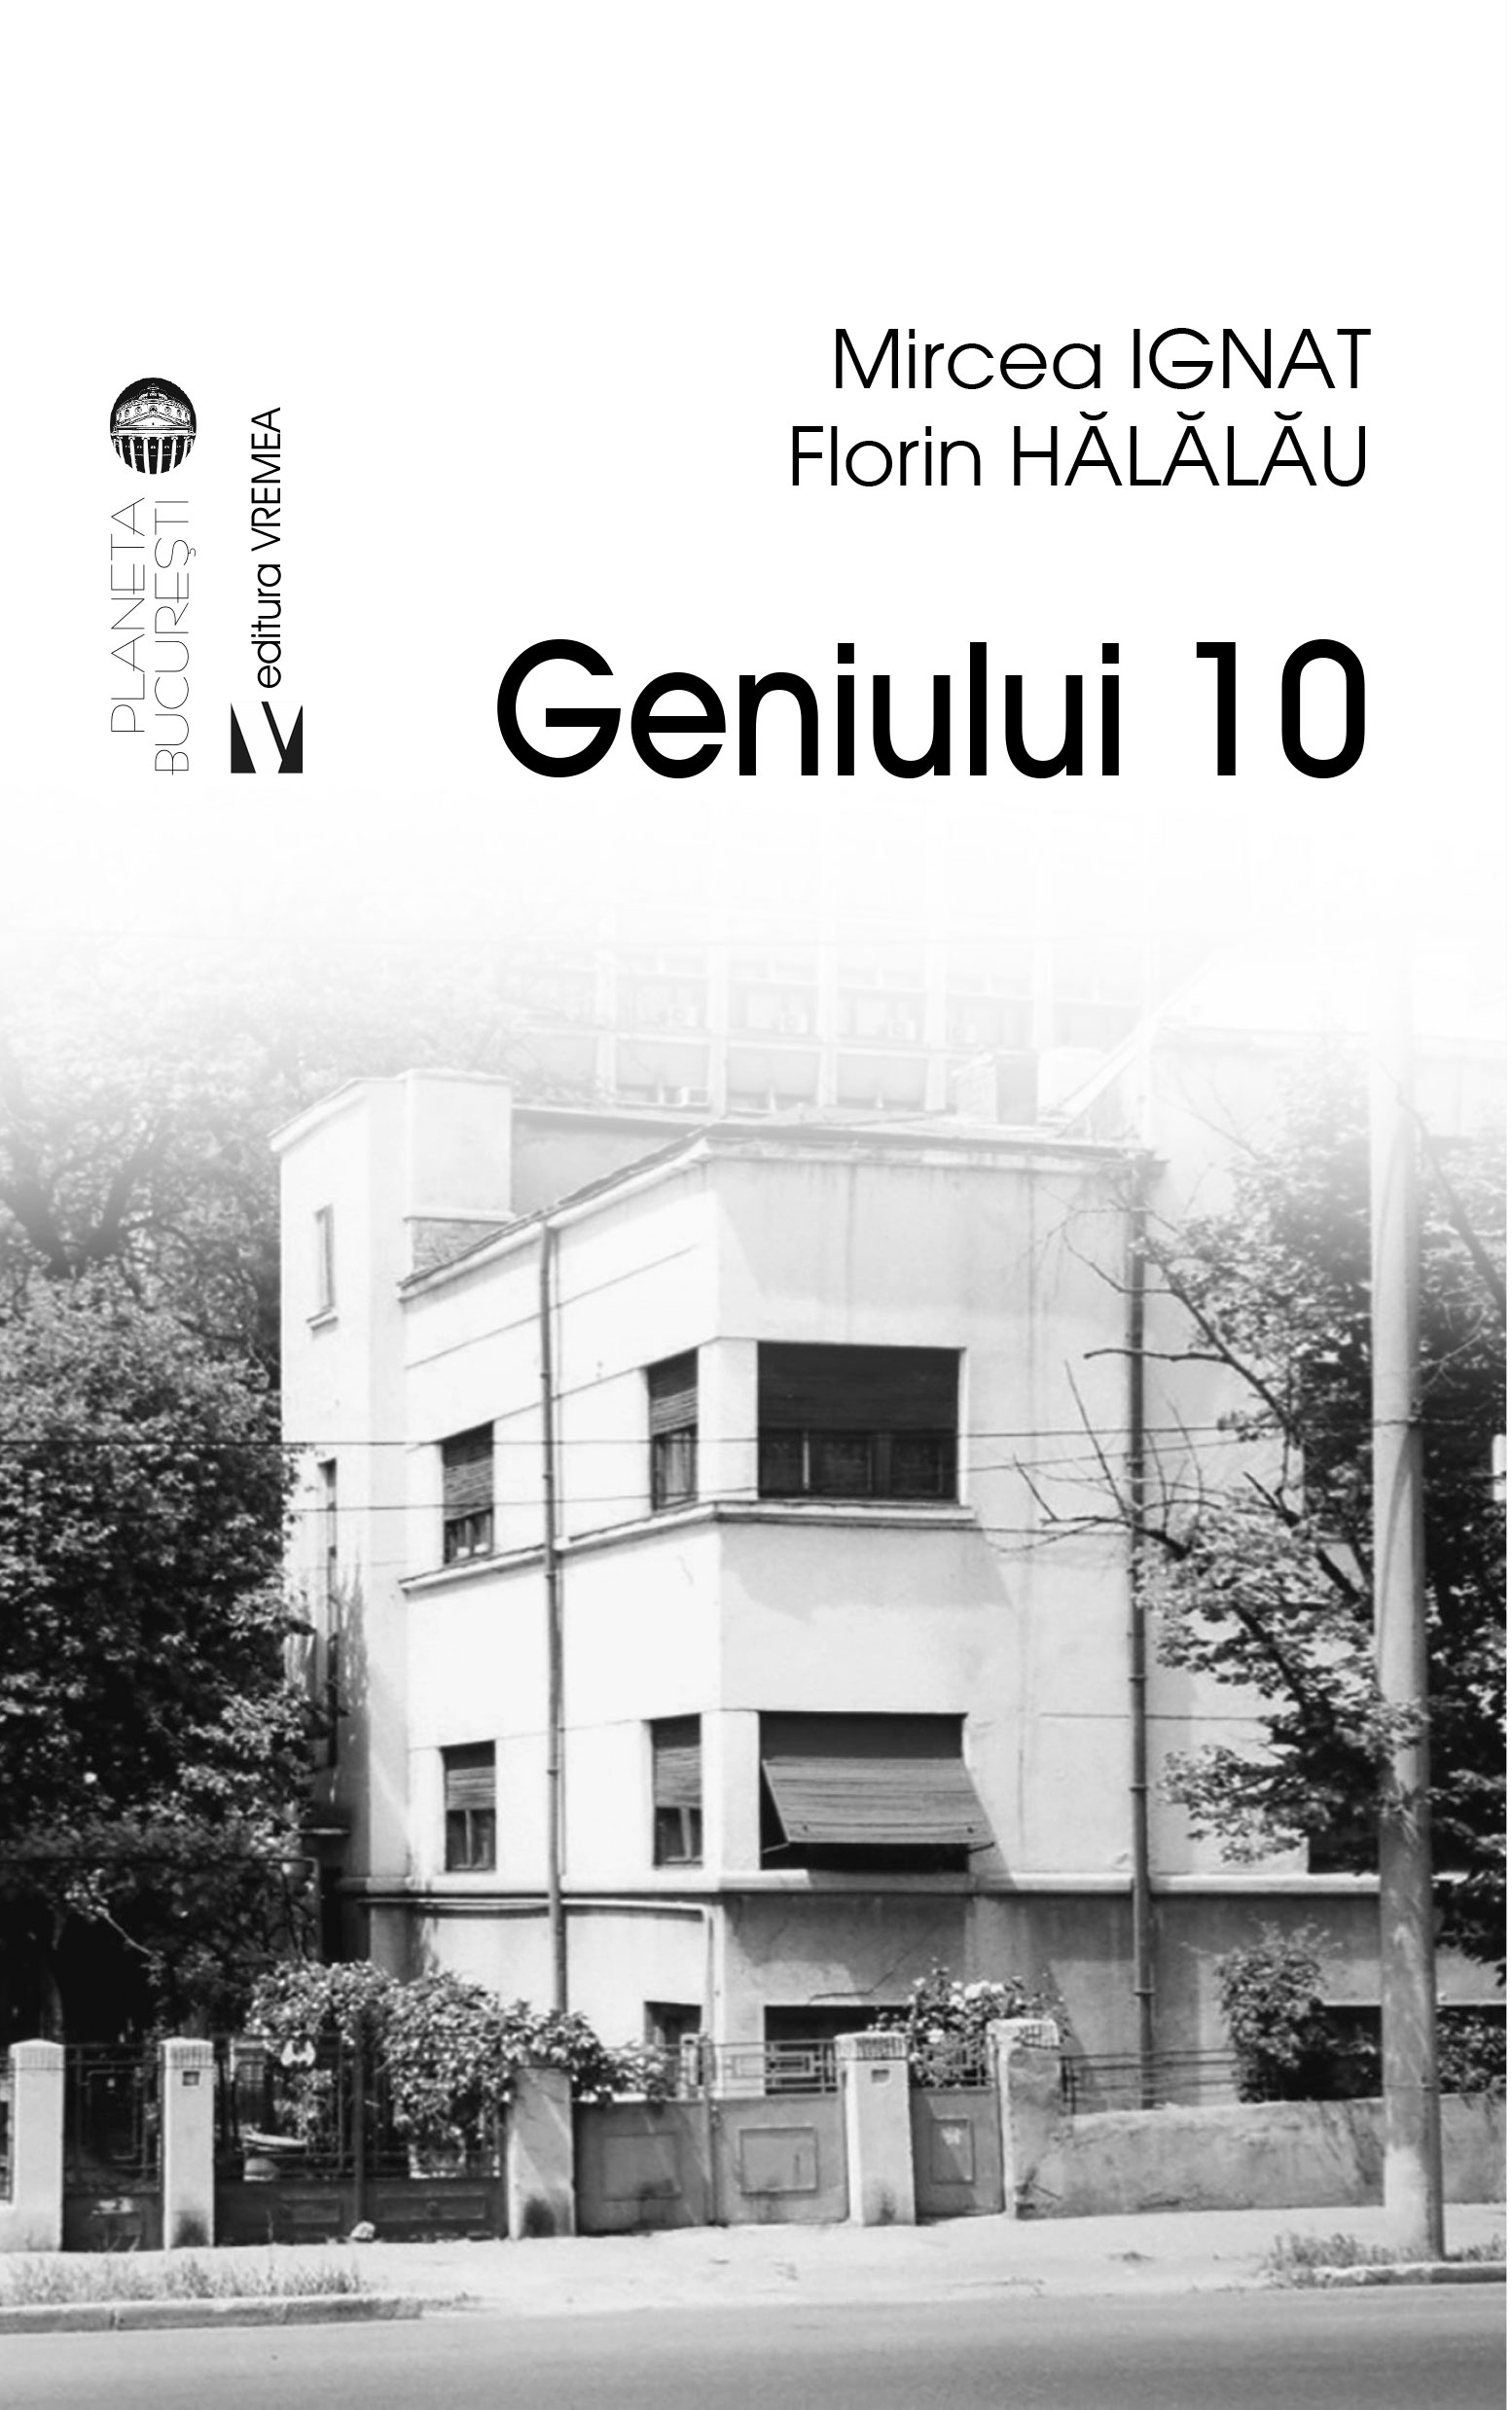 Geniul 10 | Mircea Ignat, Florin Halalau carturesti.ro imagine 2022